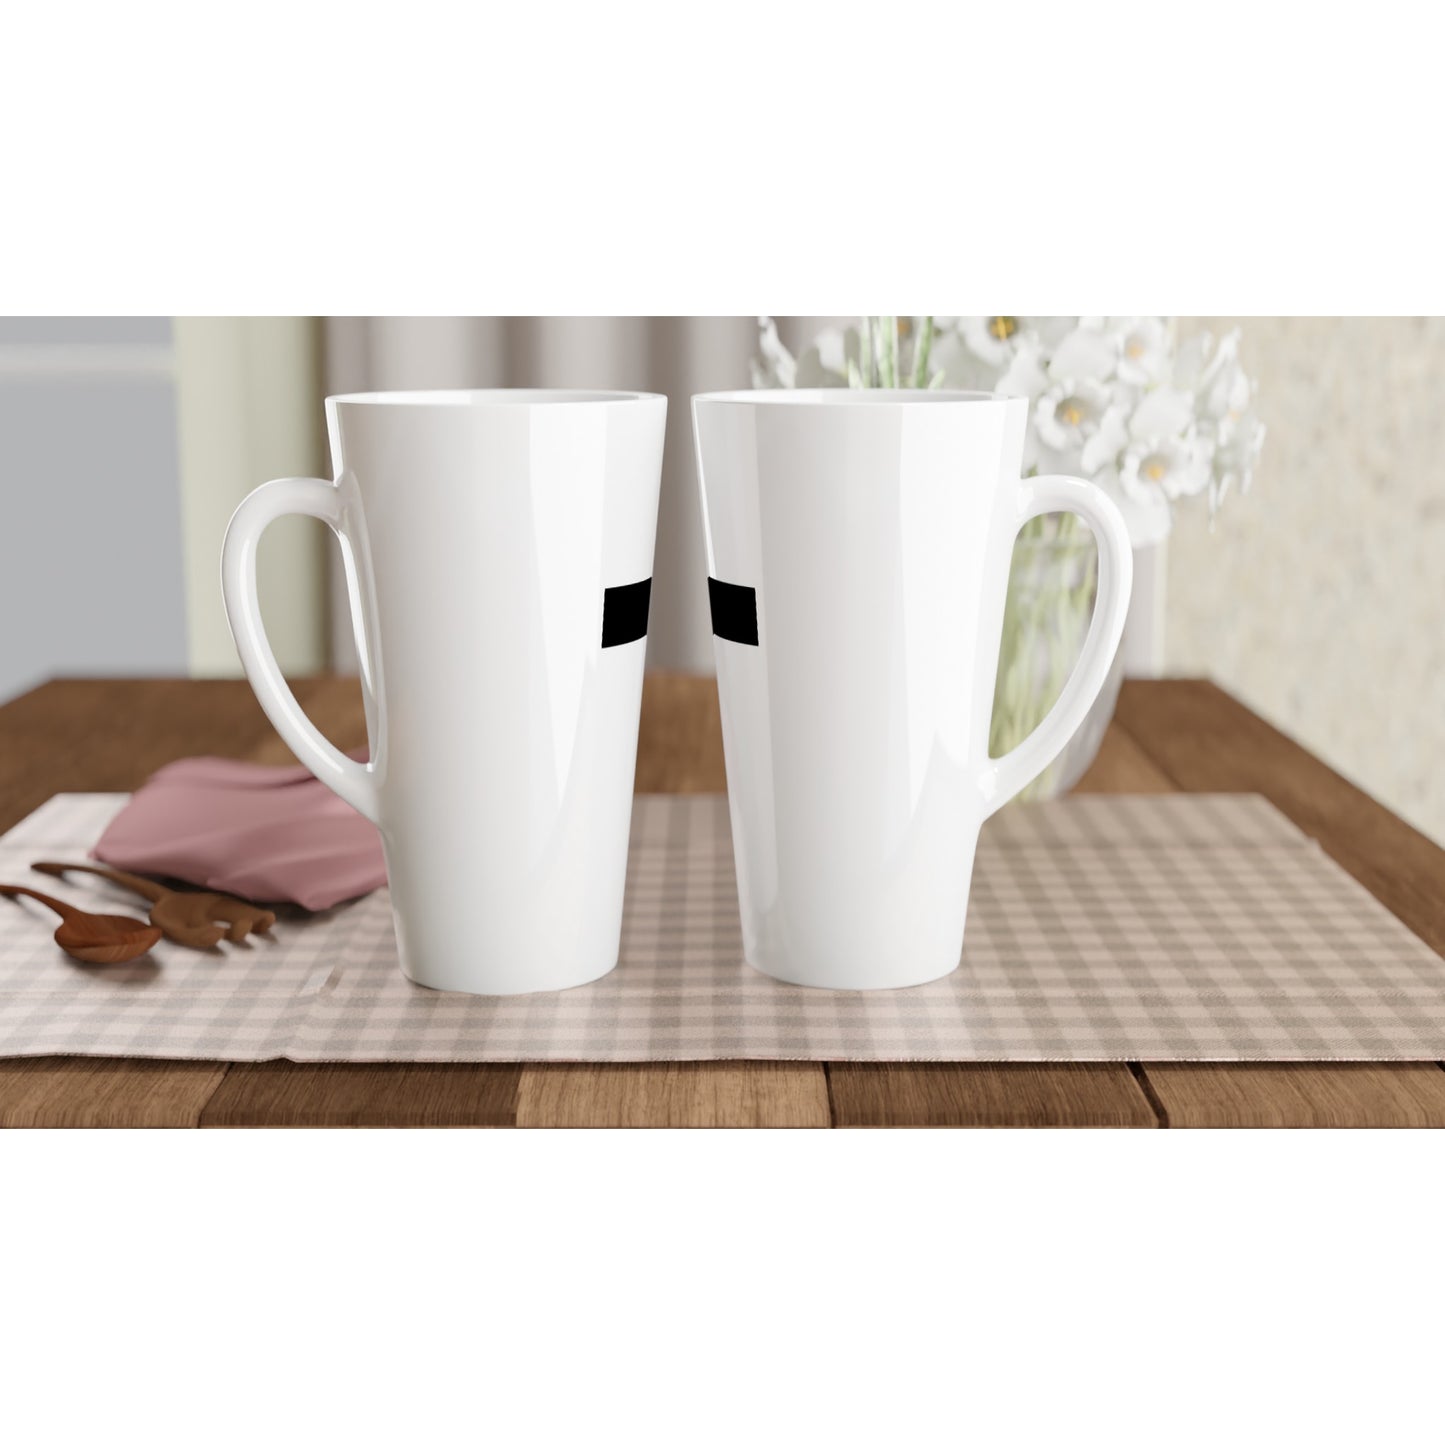 Christian Cross / Everyday is a Fresh Start - White Latte 17oz Ceramic Mug